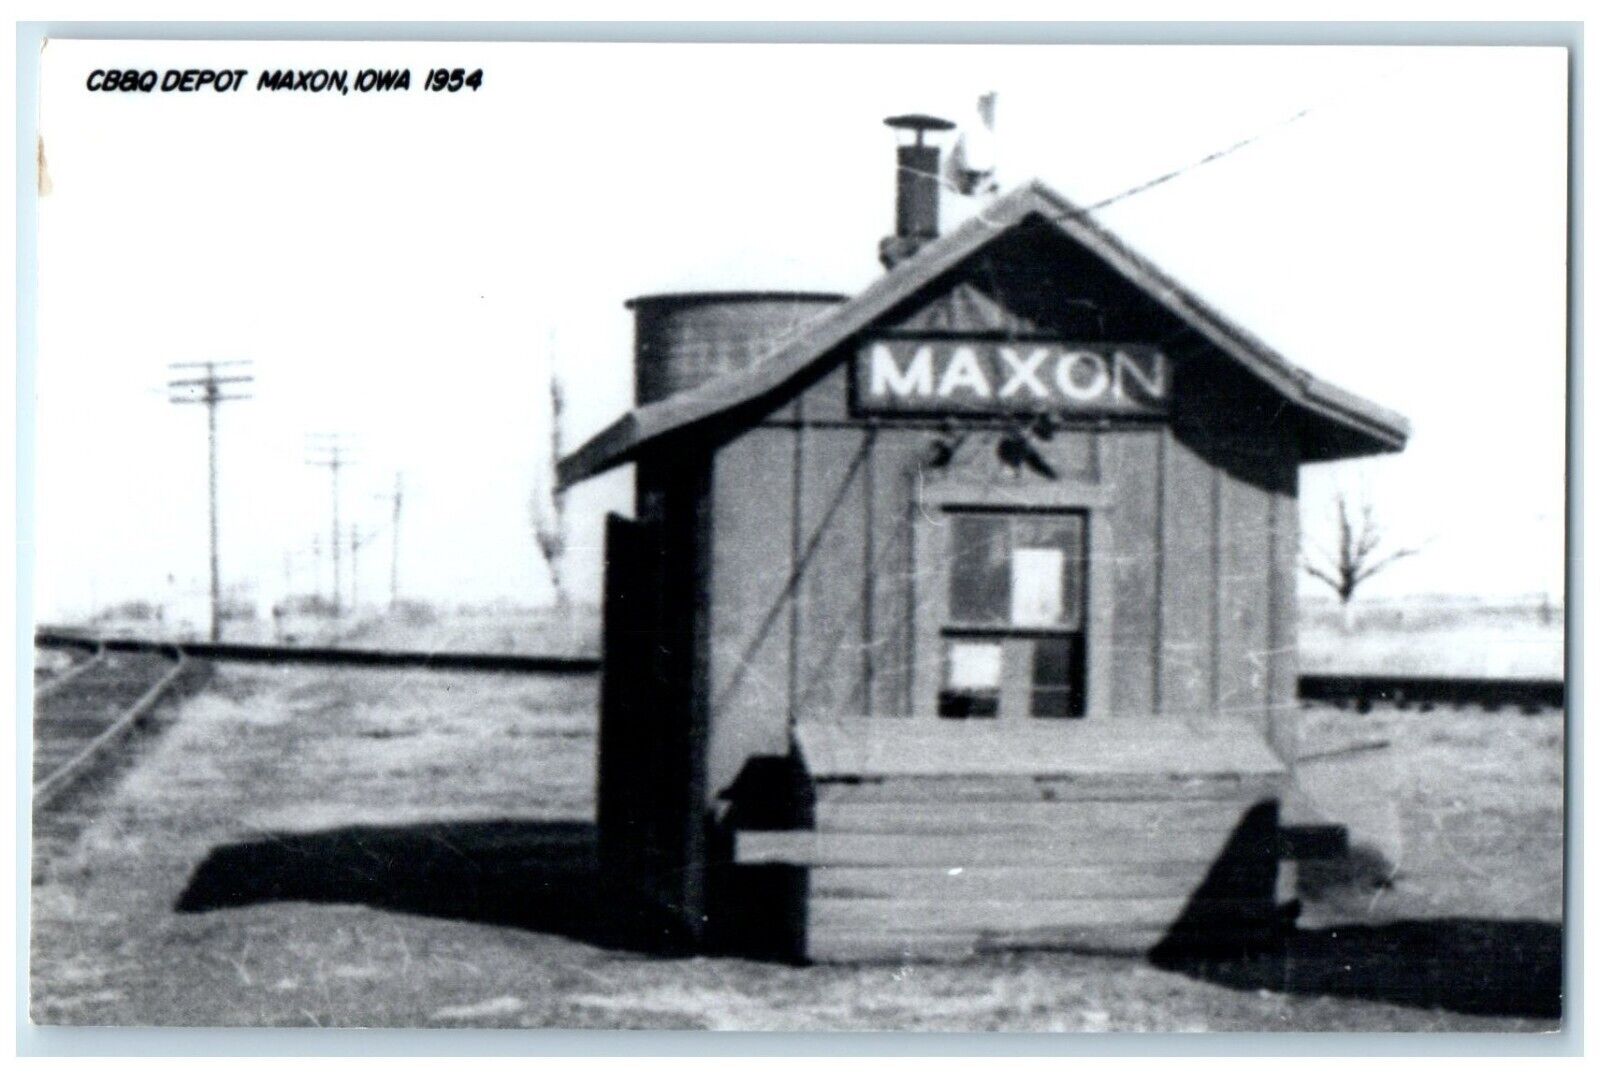 c1954 CB&Q Depot Maxon Iowa IA Railroad Train Depot Station RPPC Photo Postcard